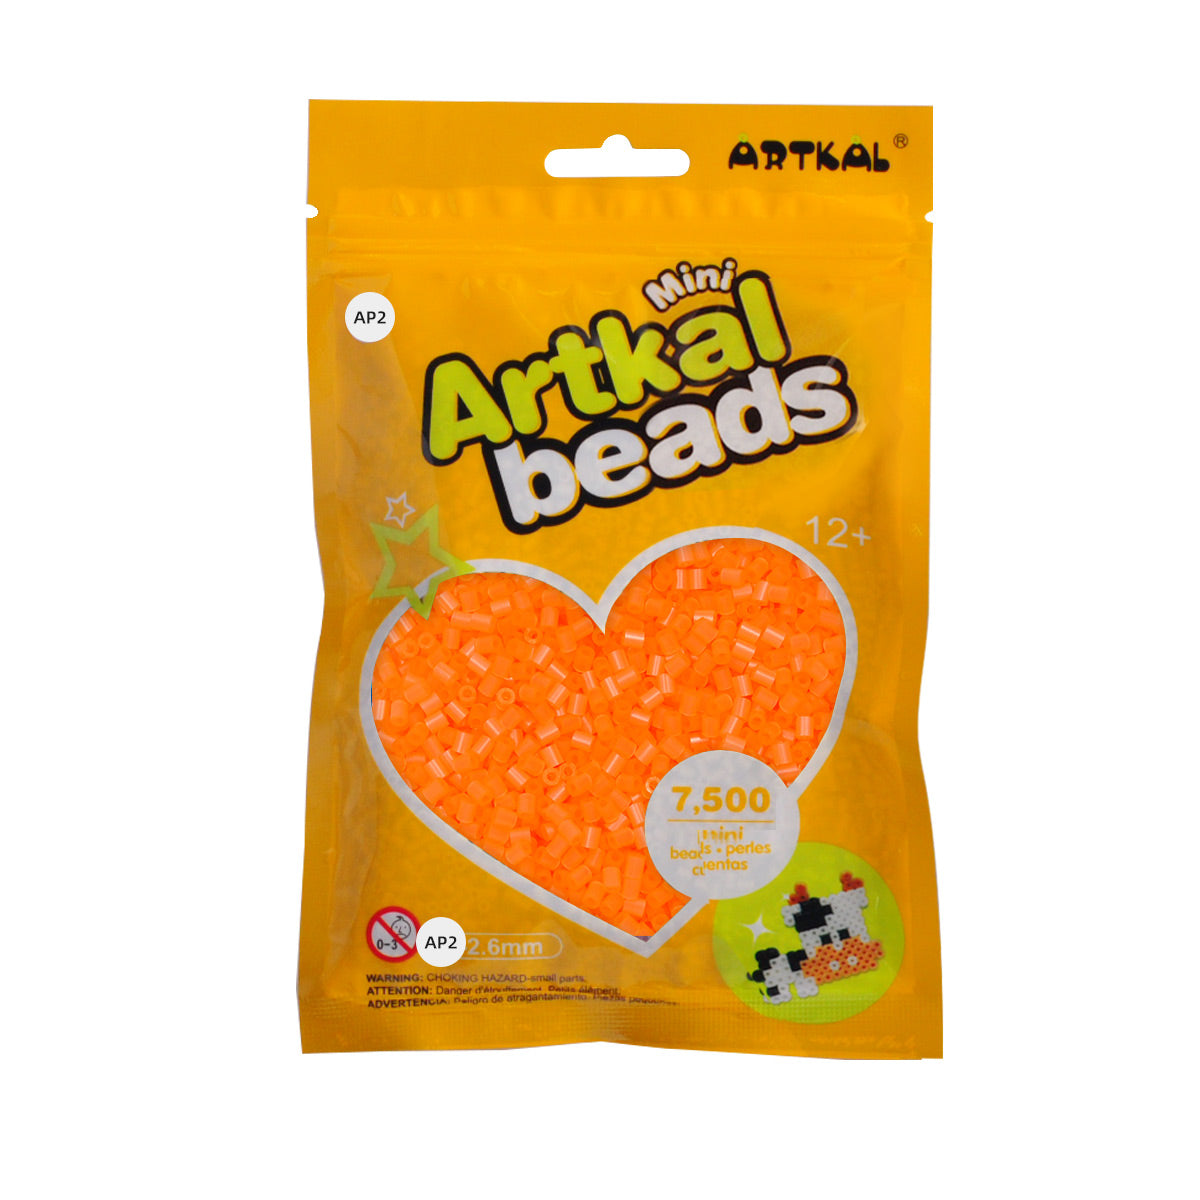 Artkal C-2.6mm Mini Beads - 192 Colours Box Set